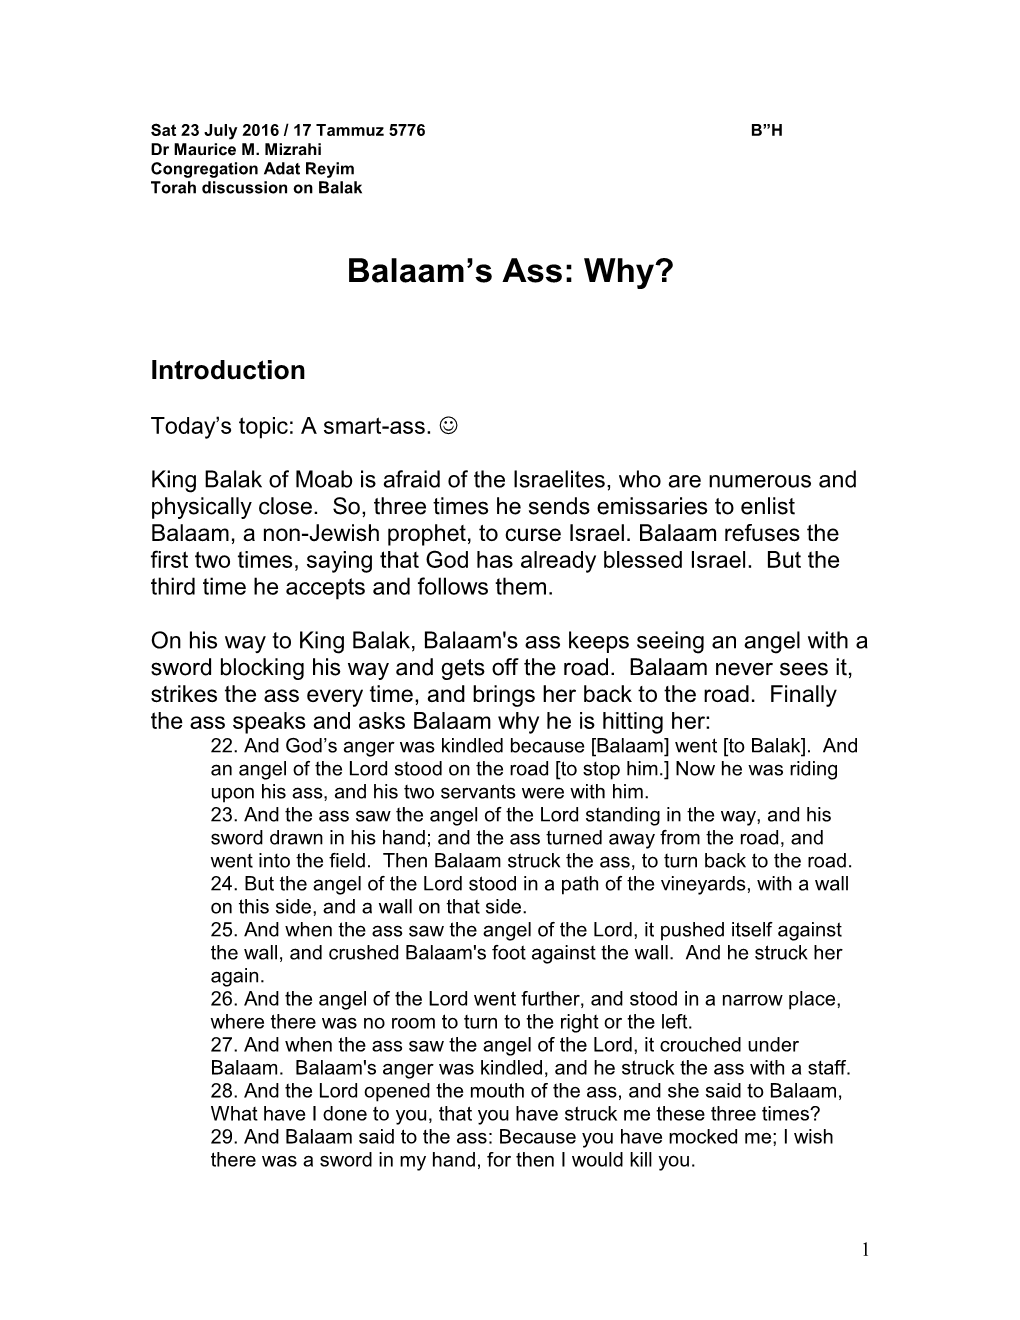 Balaam's Ass: Why? (Balak)